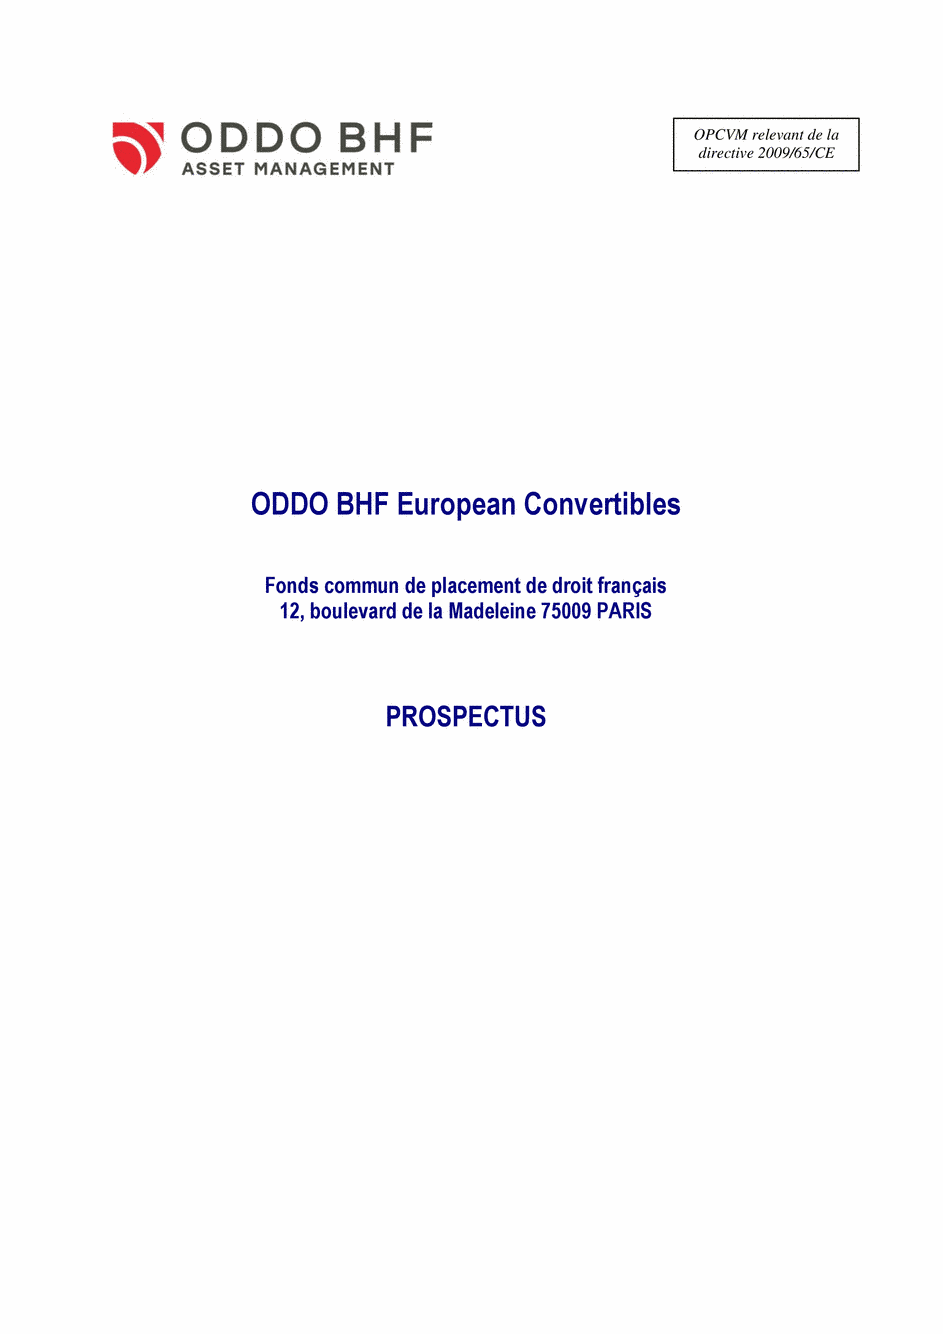 Prospectus ODDO BHF EUROPEAN CONVERTIBLES GC-EUR - 15/07/2020 - Français